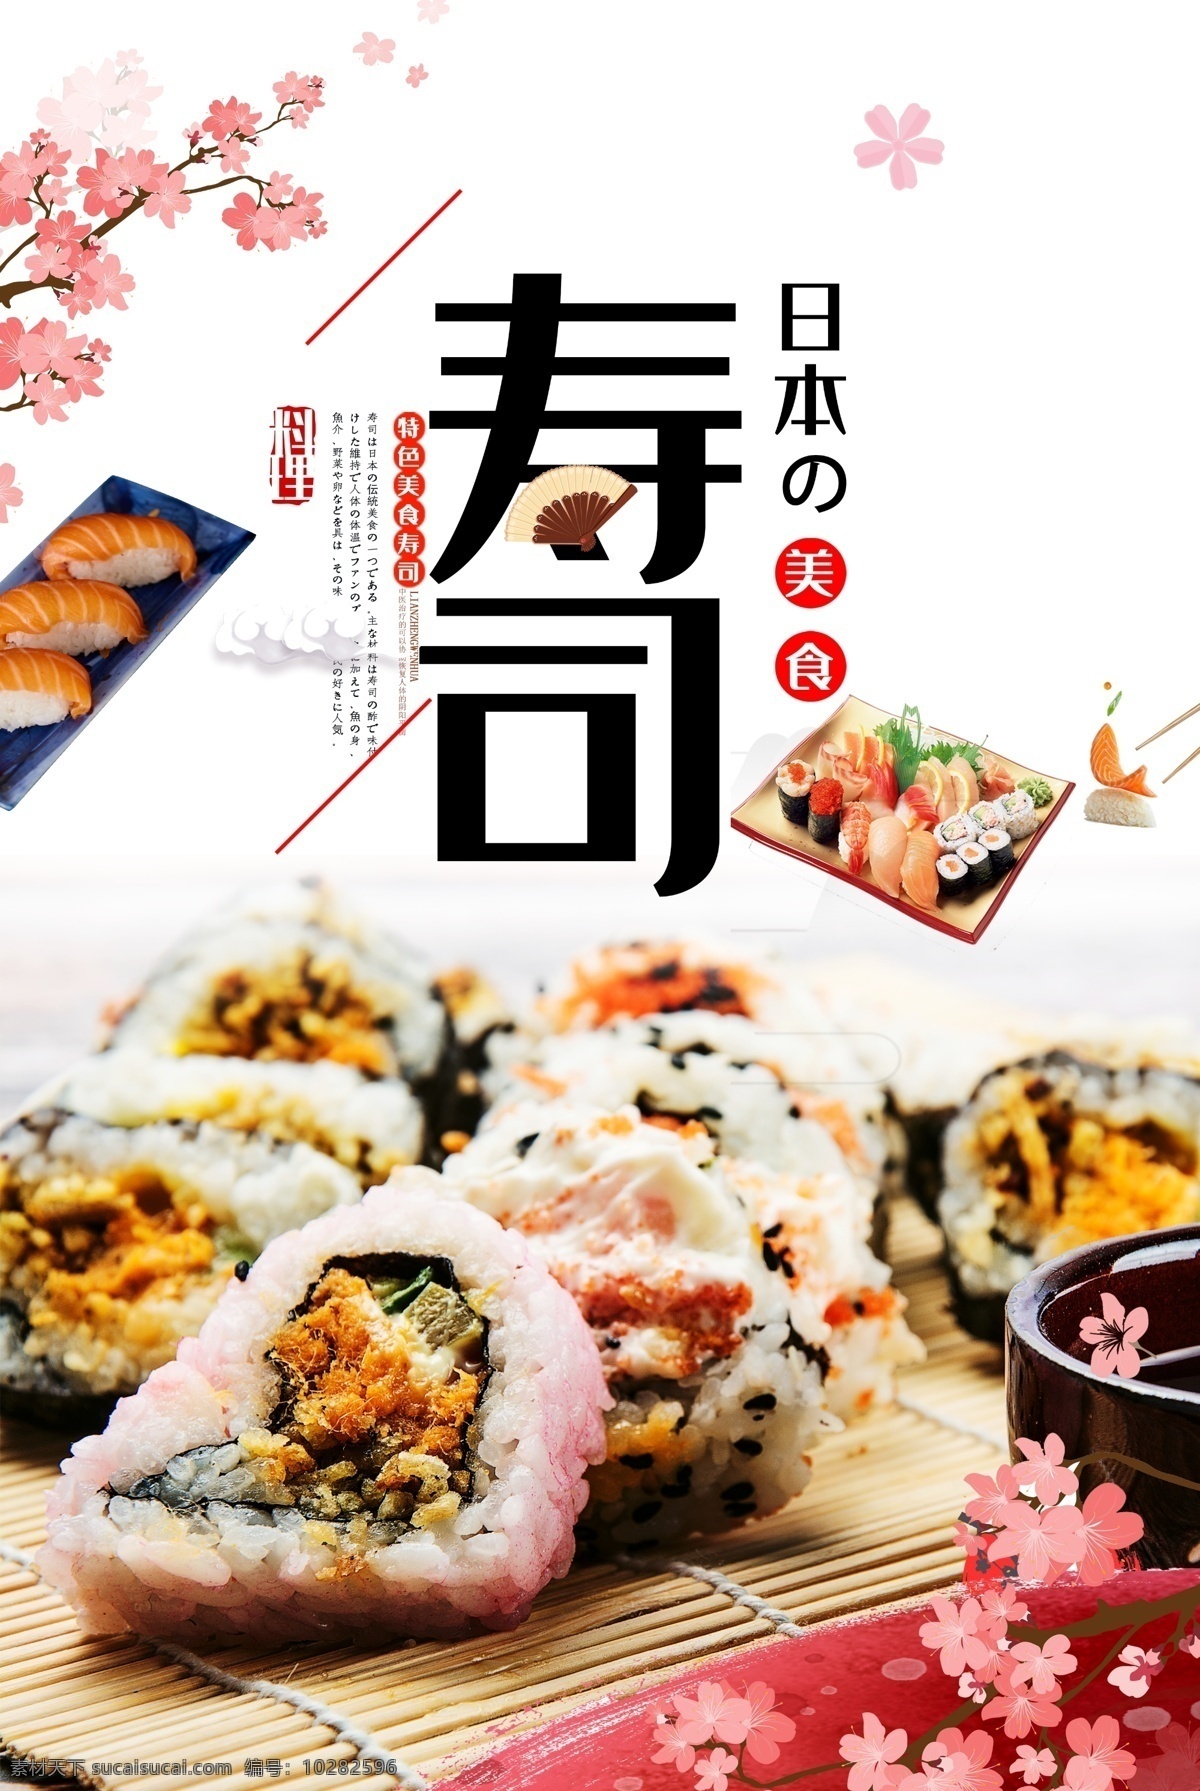 日本寿司海报 日本 日本寿司 海报 寿司海报 饭团 台湾饭团 樱花